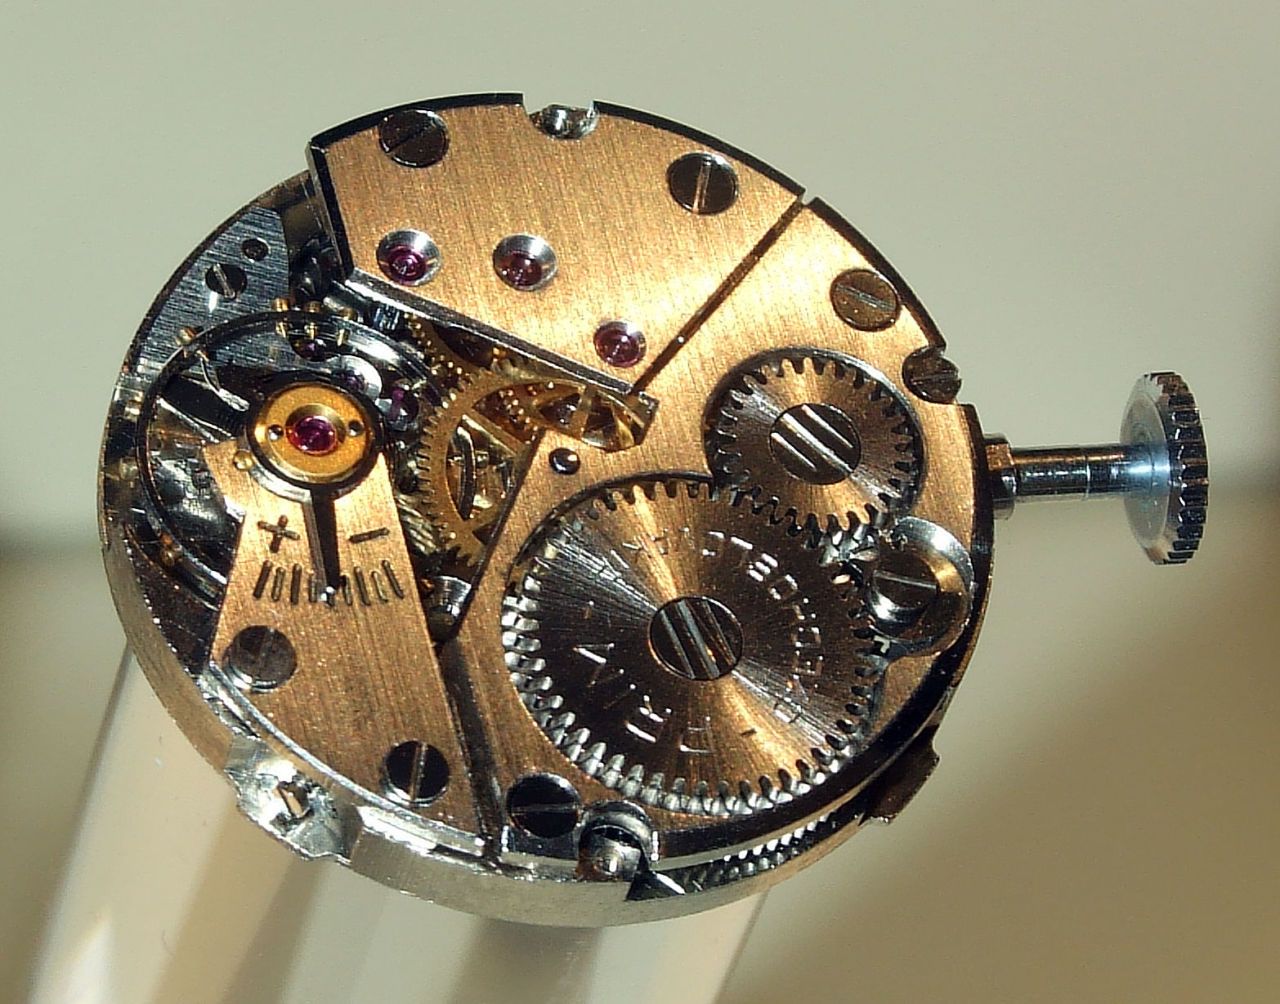 Первые механические часы в мире